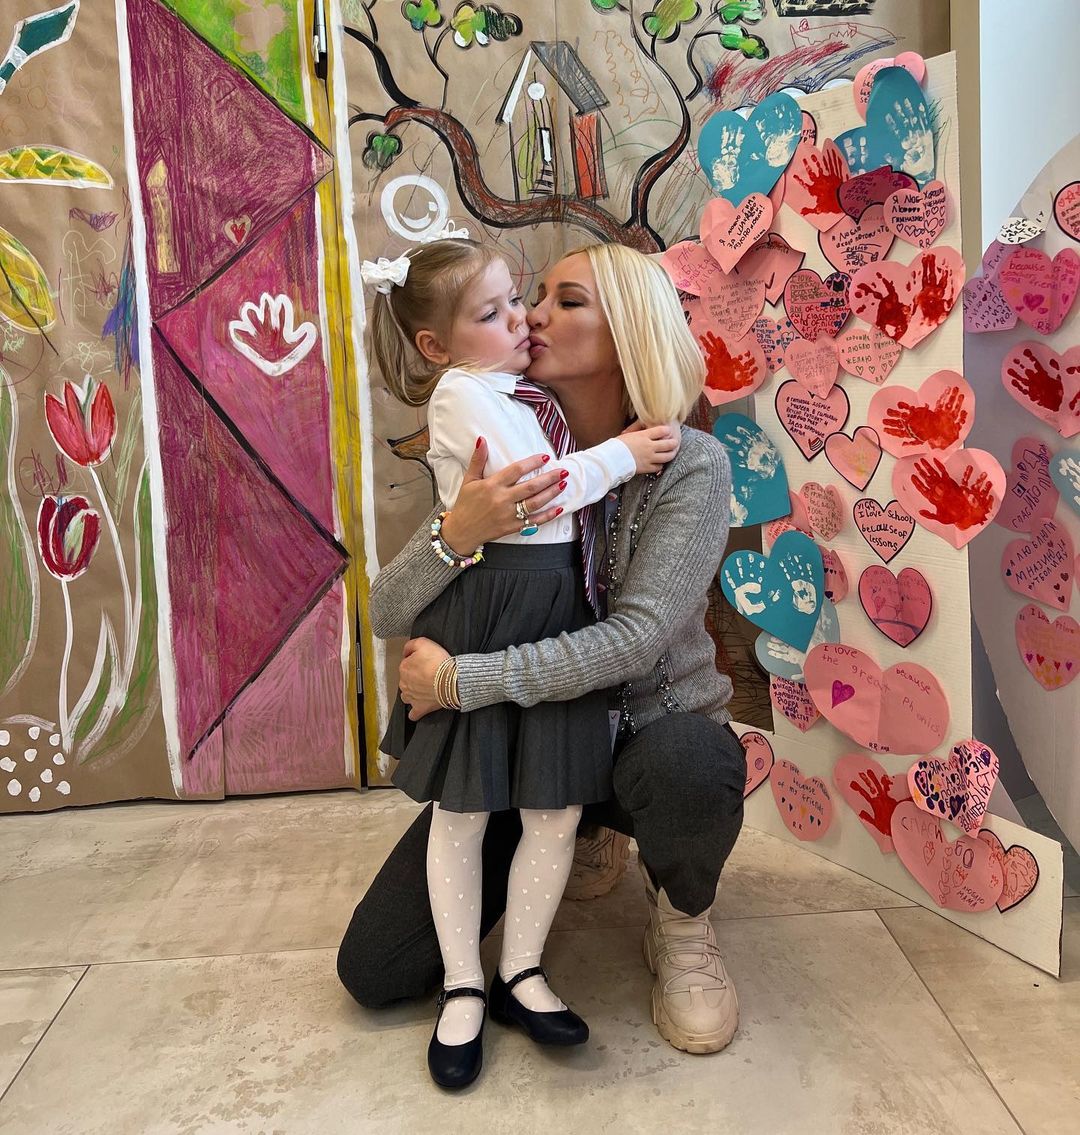 Лера Кудрявцева показала милое фото с дочкой - Первый женский — новости  шоу-бизнеса, культура, Life Style